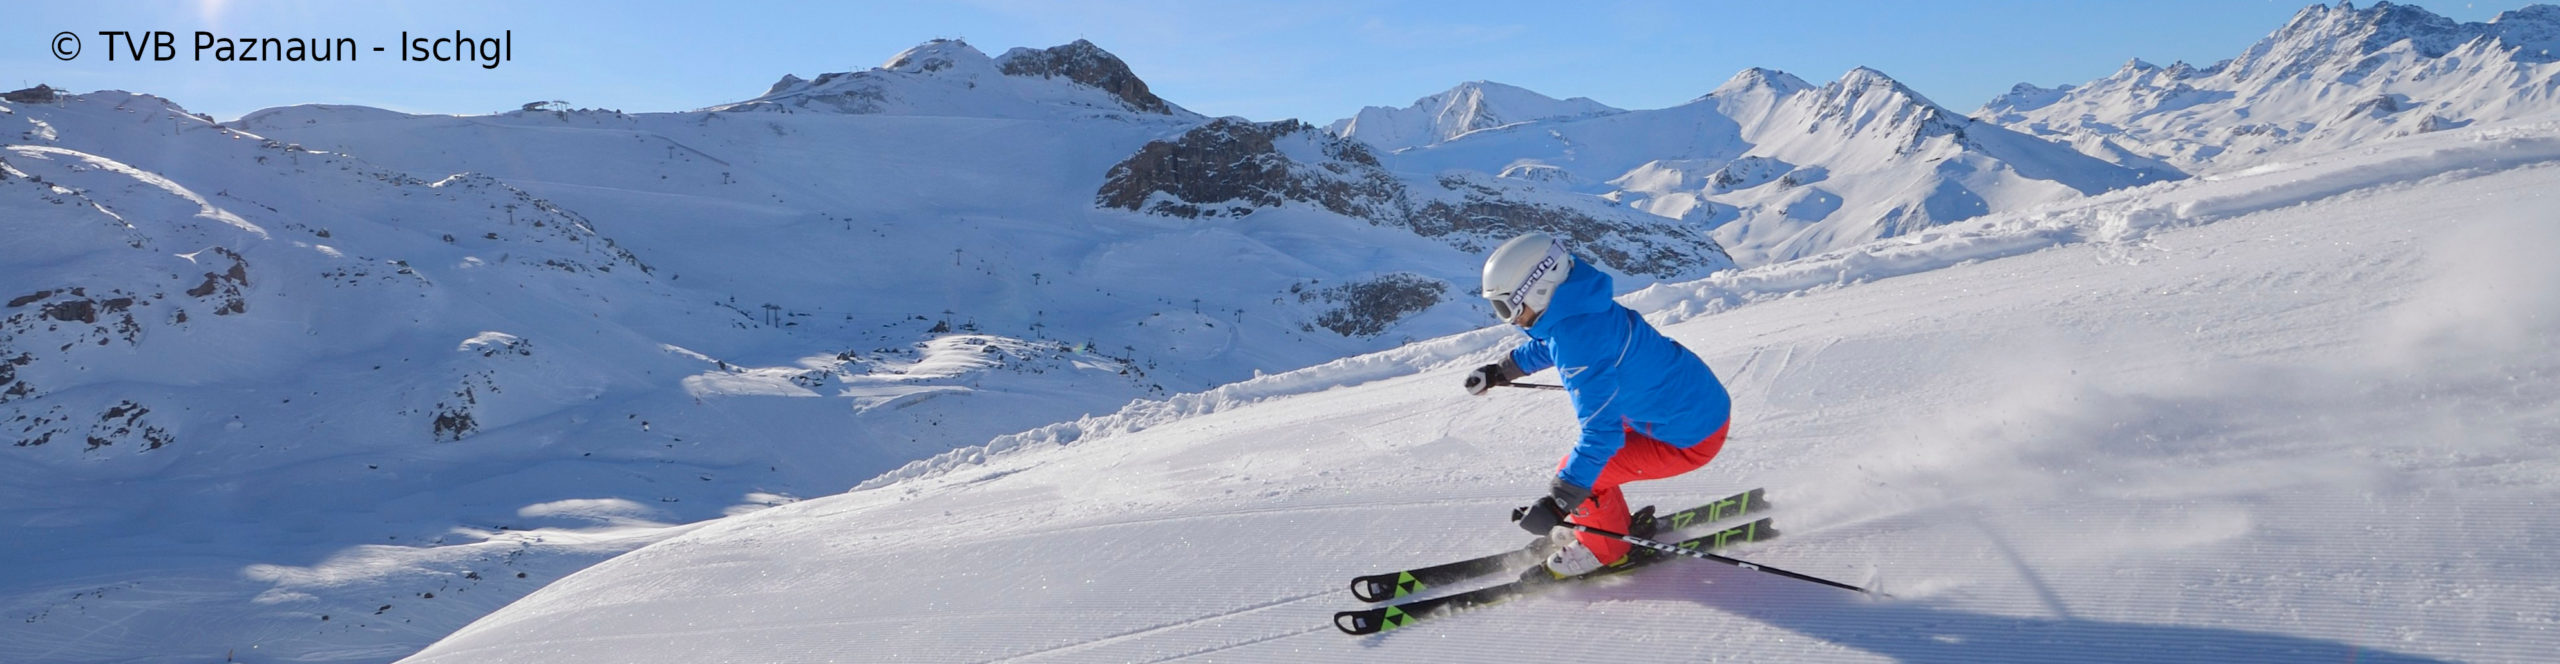 ISCHGL & SERFAUS – Skiwochenende in zwei der besten Skigebiete der Alpen 